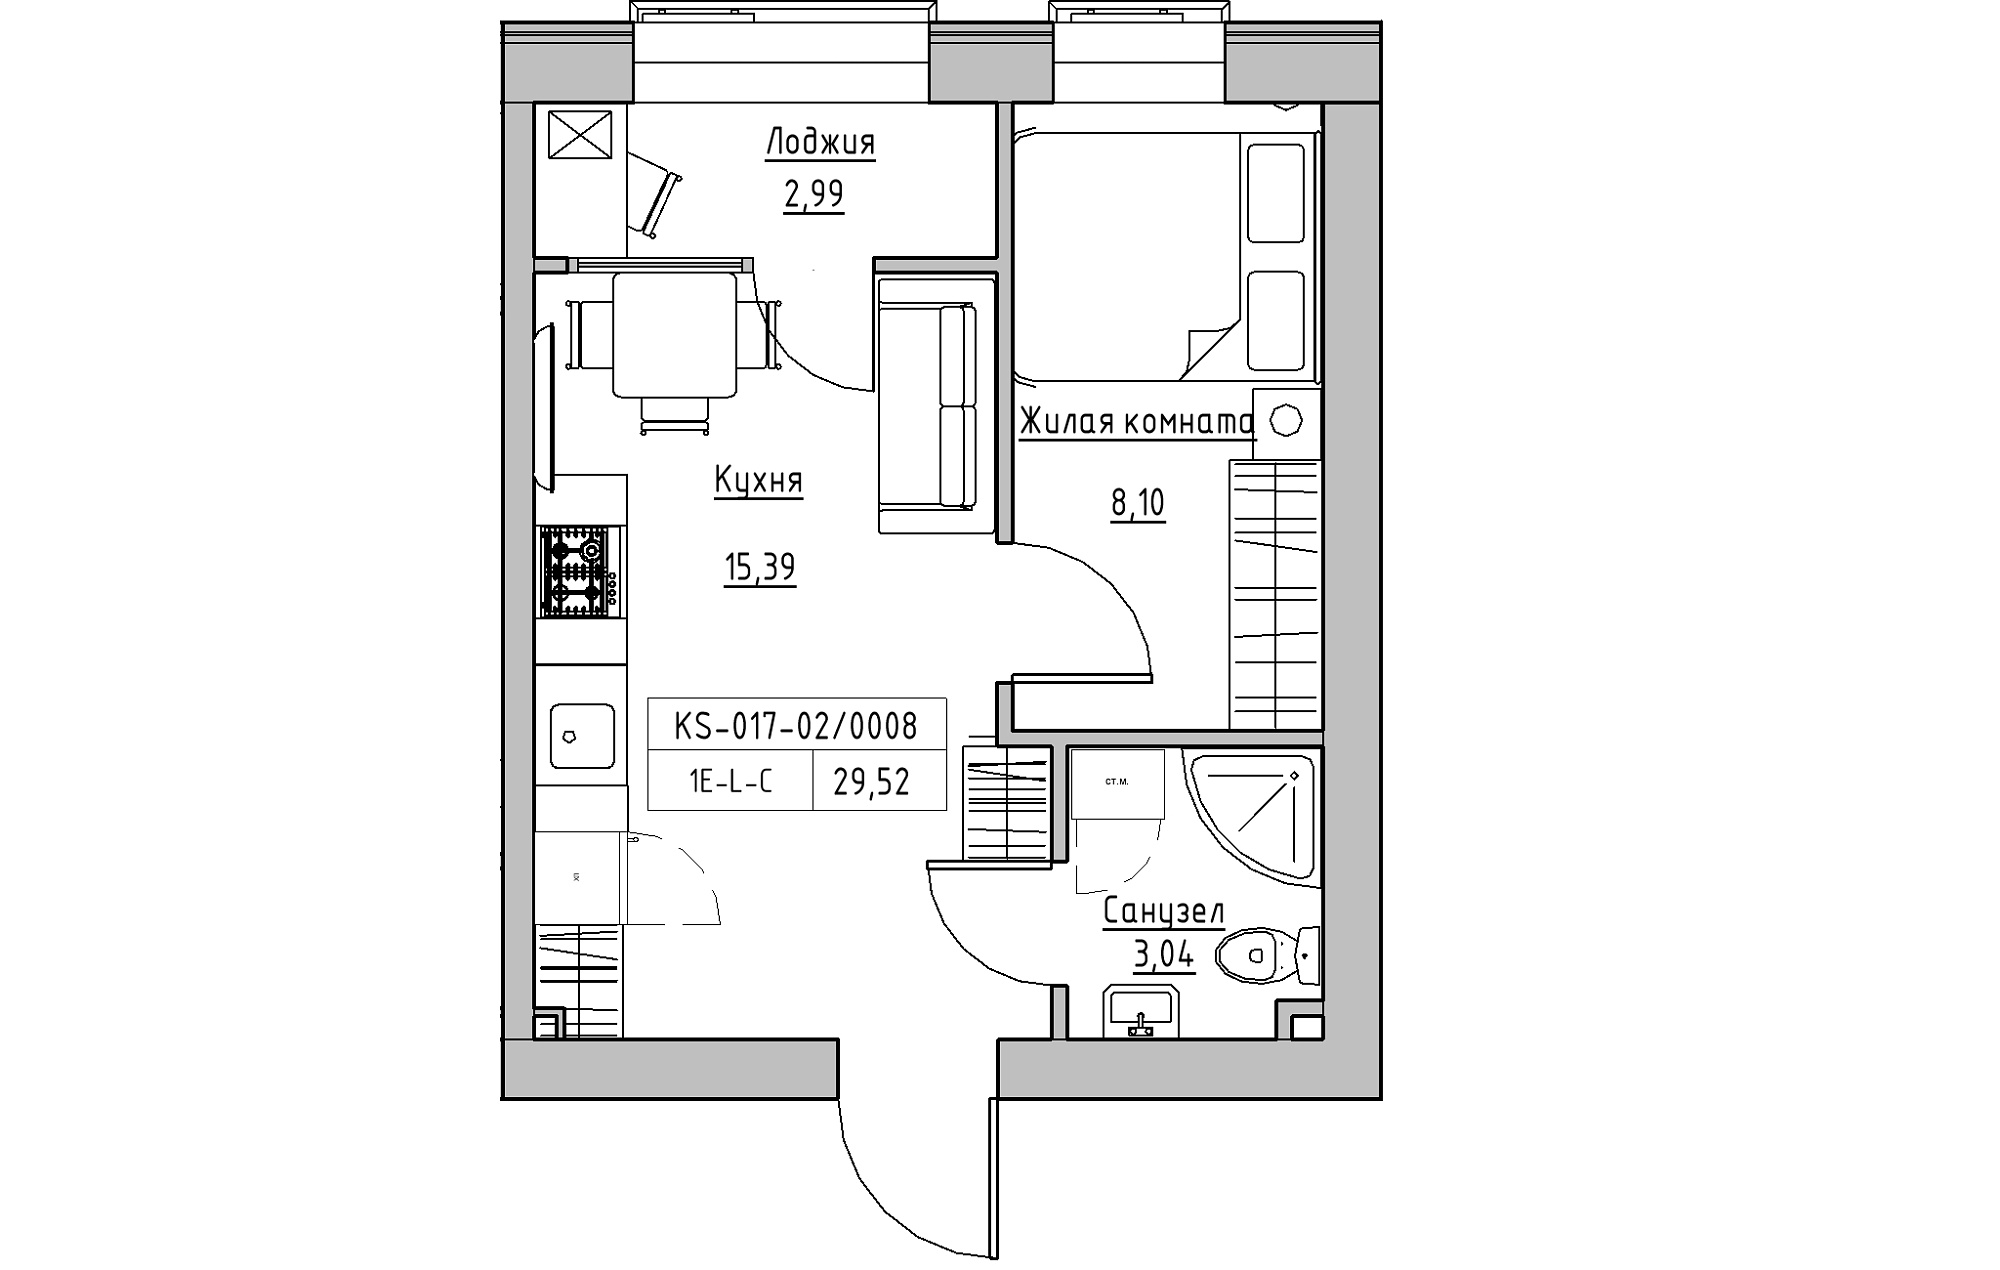 Планировка 1-к квартира площей 29.52м2, KS-017-02/0008.